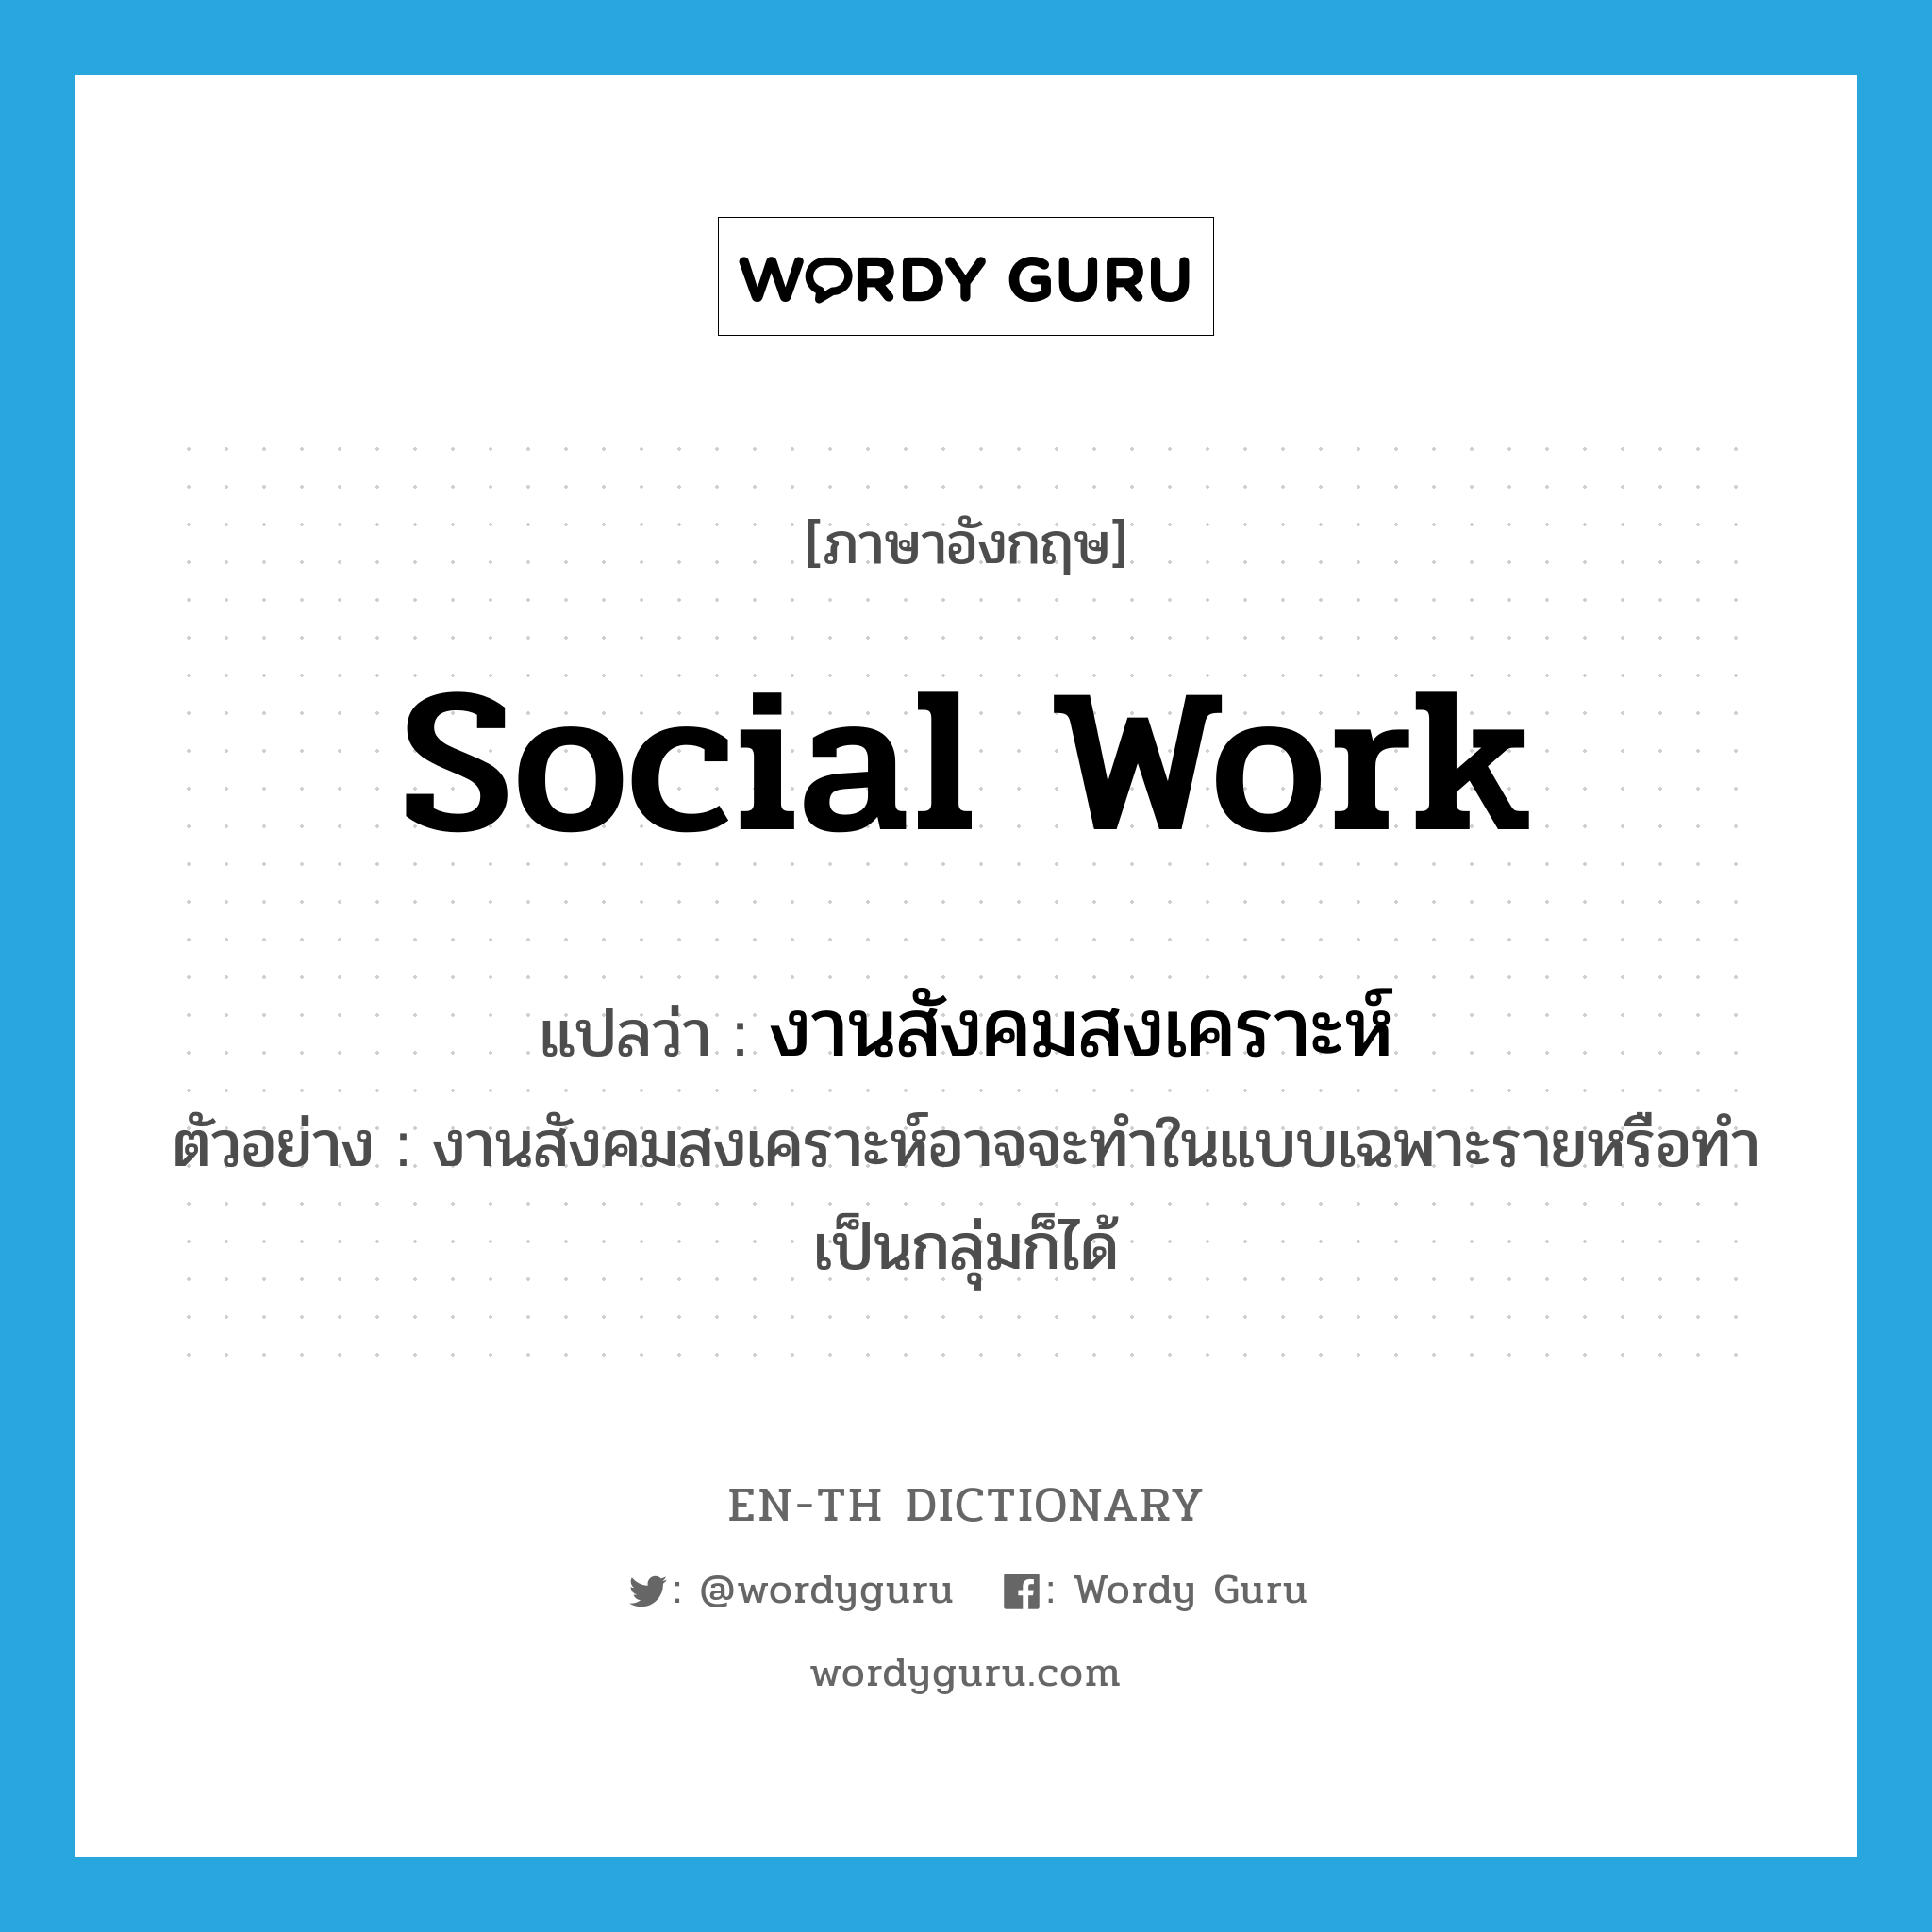 social work แปลว่า?, คำศัพท์ภาษาอังกฤษ social work แปลว่า งานสังคมสงเคราะห์ ประเภท N ตัวอย่าง งานสังคมสงเคราะห์อาจจะทำในแบบเฉพาะรายหรือทำเป็นกลุ่มก็ได้ หมวด N